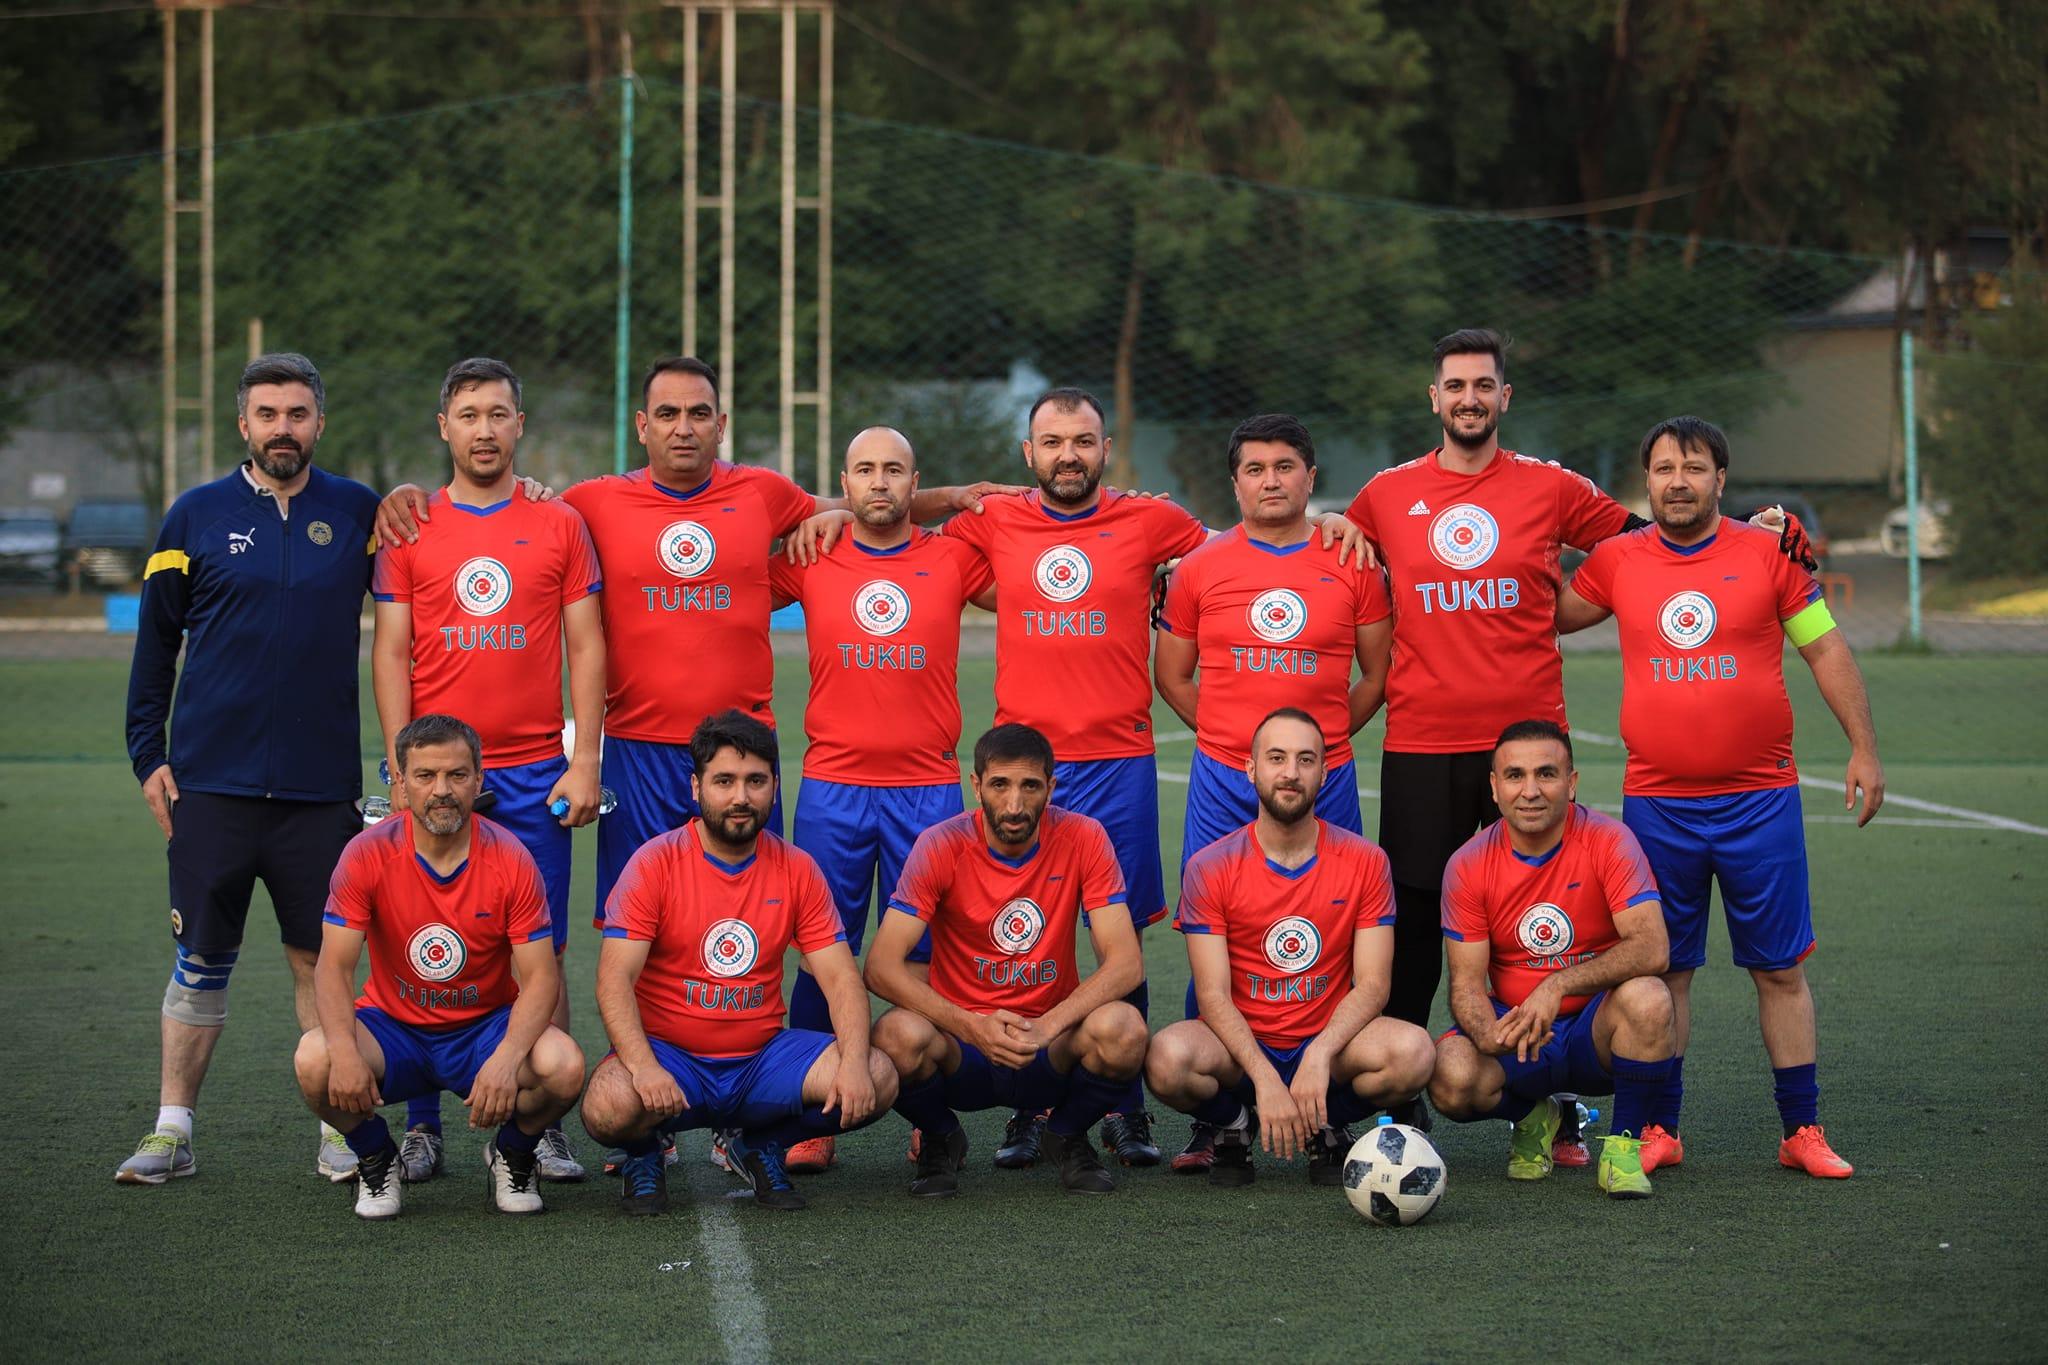 TÜKİB Halı Saha Futbol Turnuvası grup maçları yapıldı